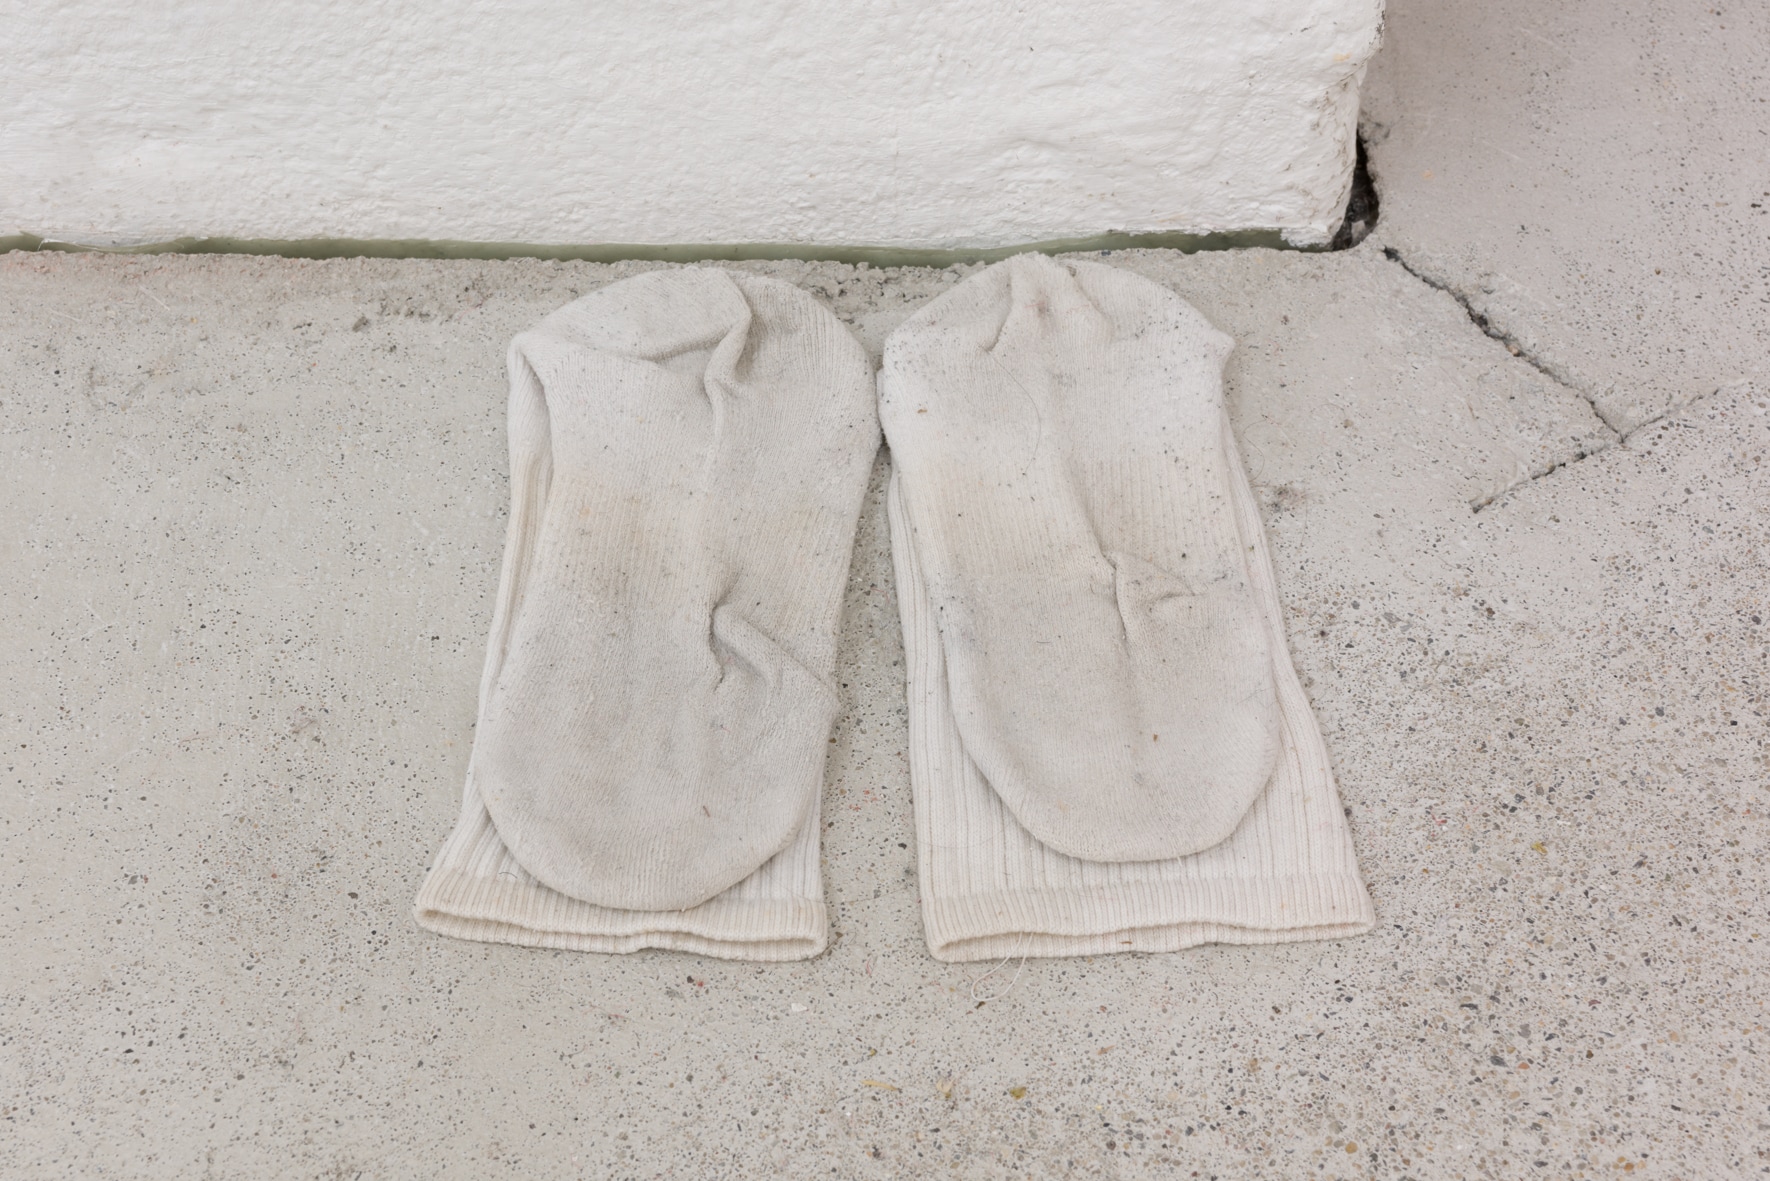 Yuu Takamizawa, My socks in Vienna, socks, 2019